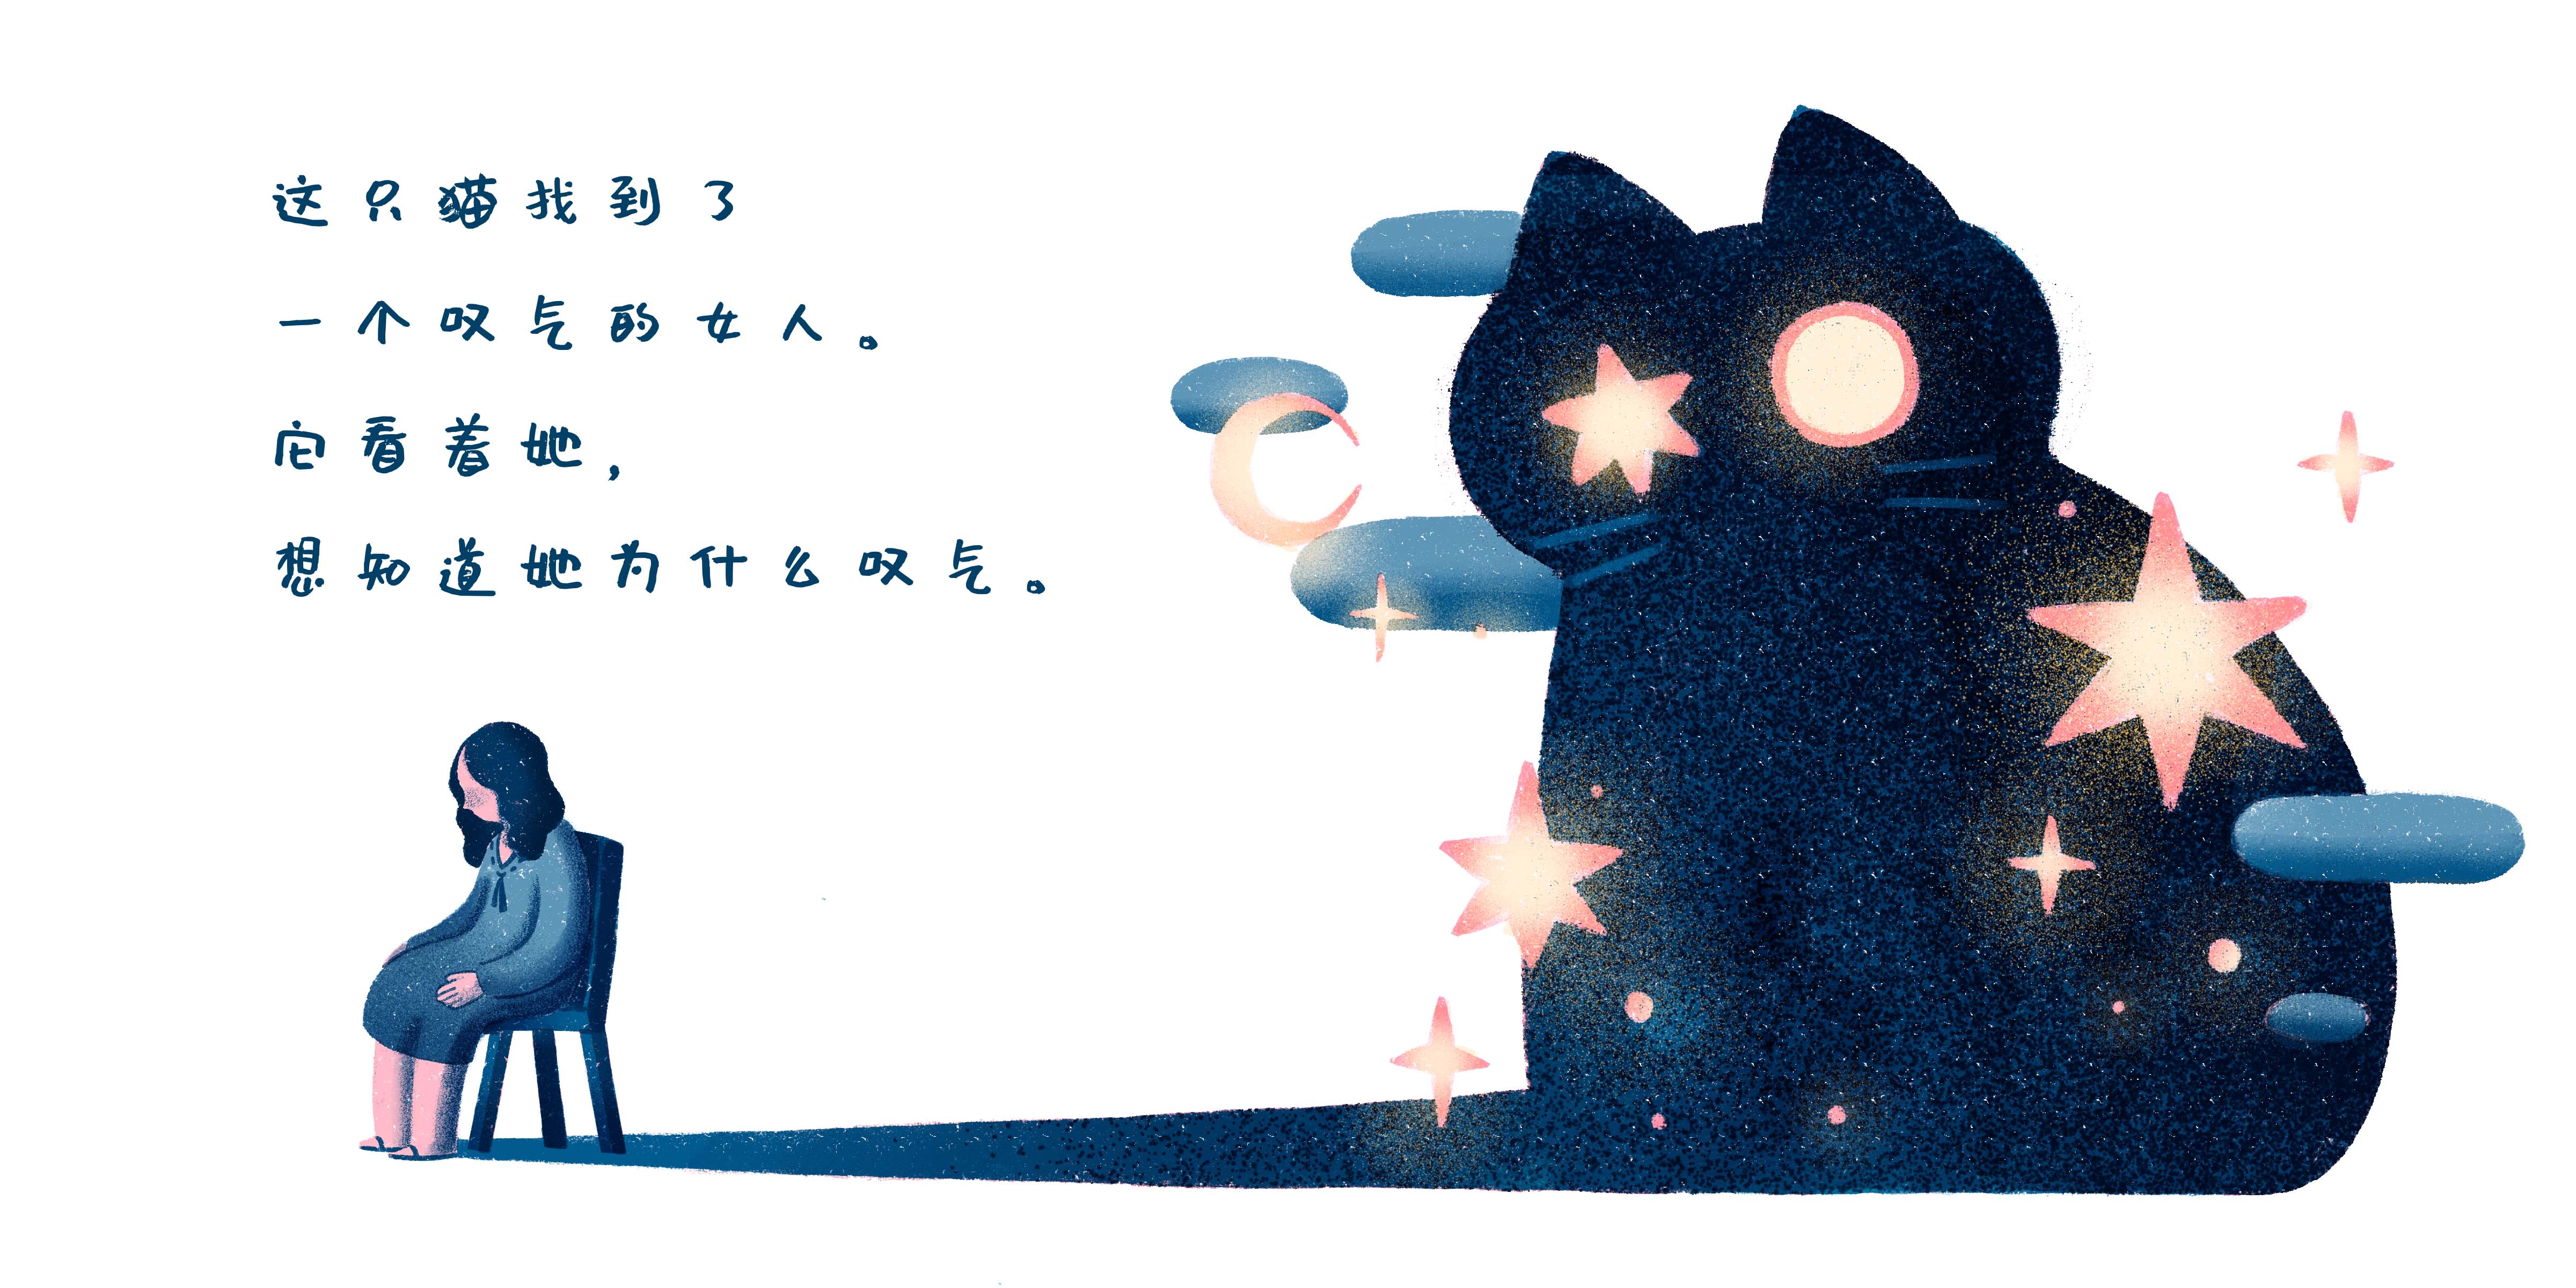 短篇绘本《黑夜里的猫》